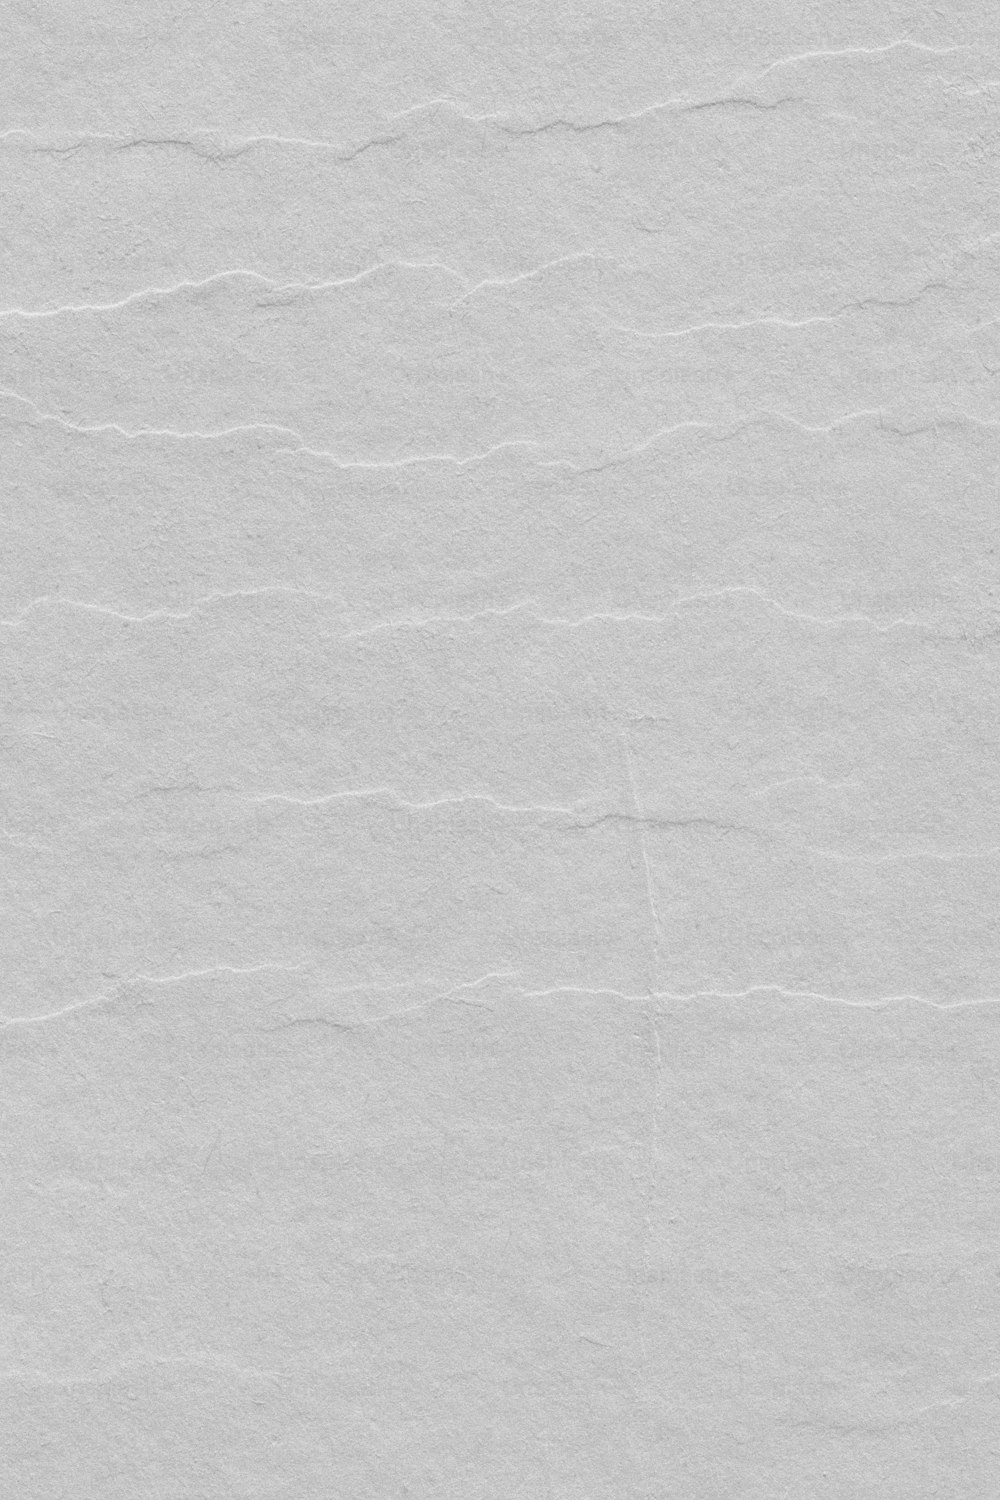 ein weißes Blatt Papier mit ein paar Linien darauf